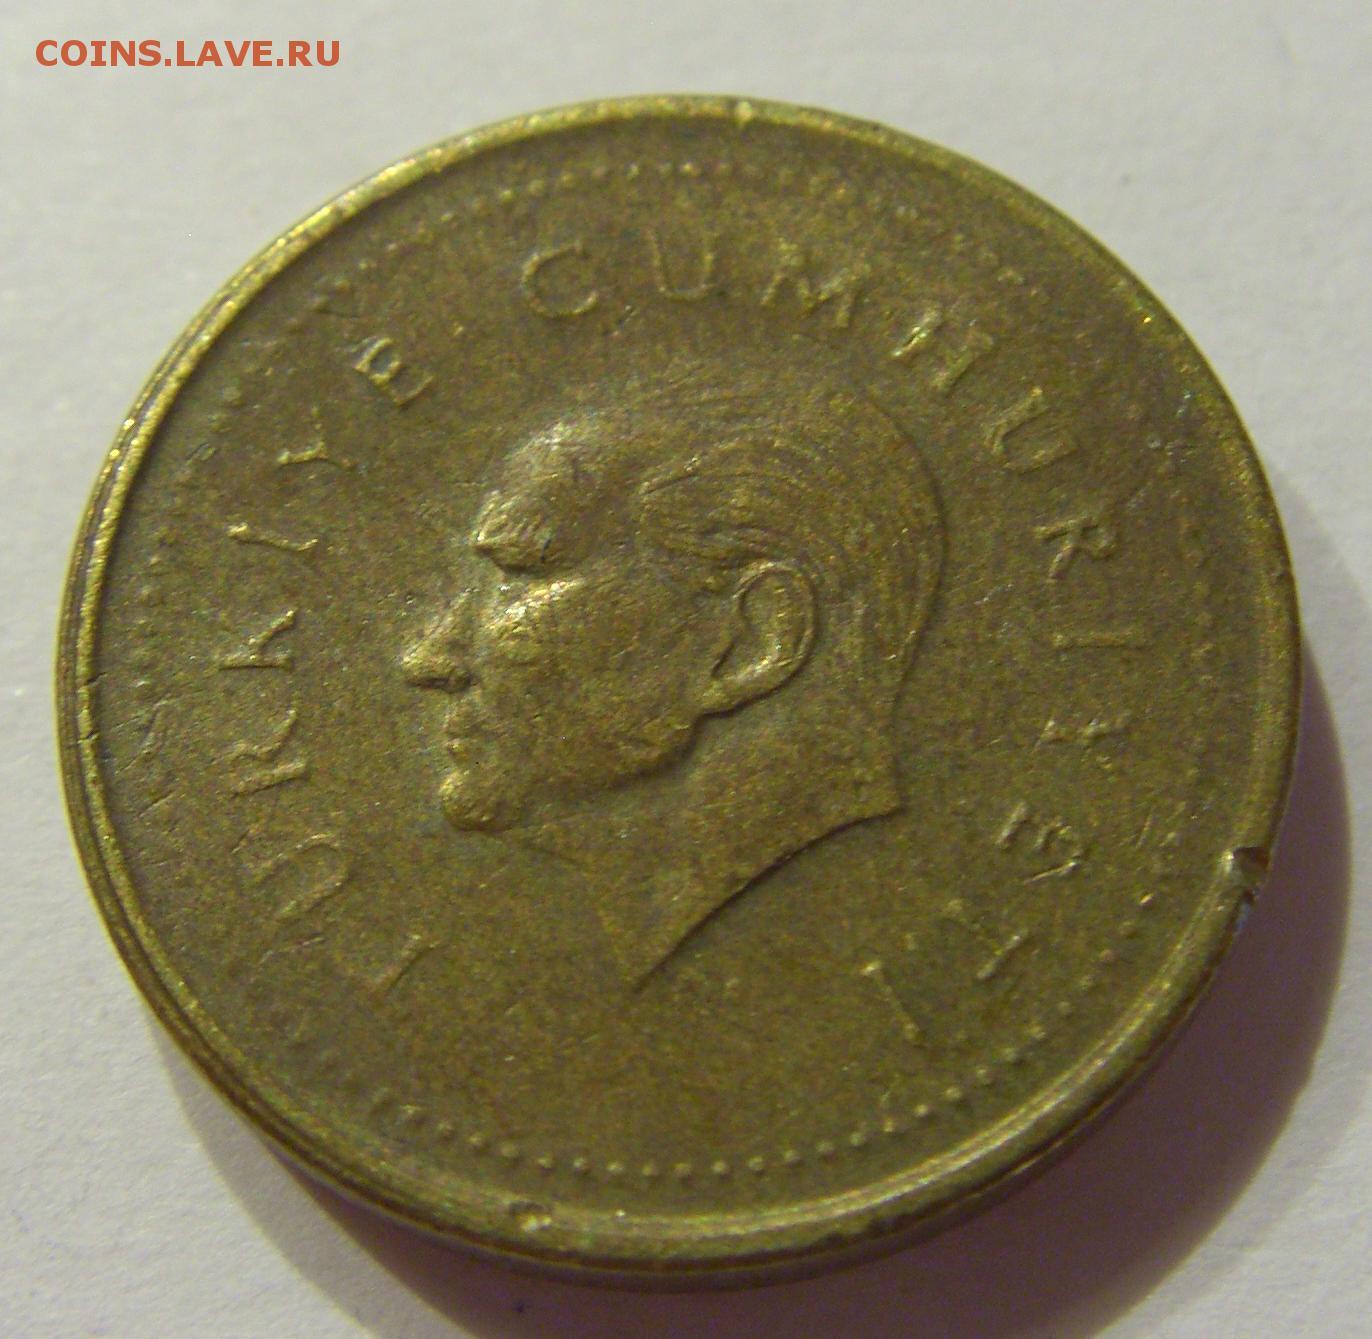 500000 лир в рублях. Железная монета 5000 лир. 5000 Советских лир. Покажите монету 5000 лир и сколько она стоит в рублях.